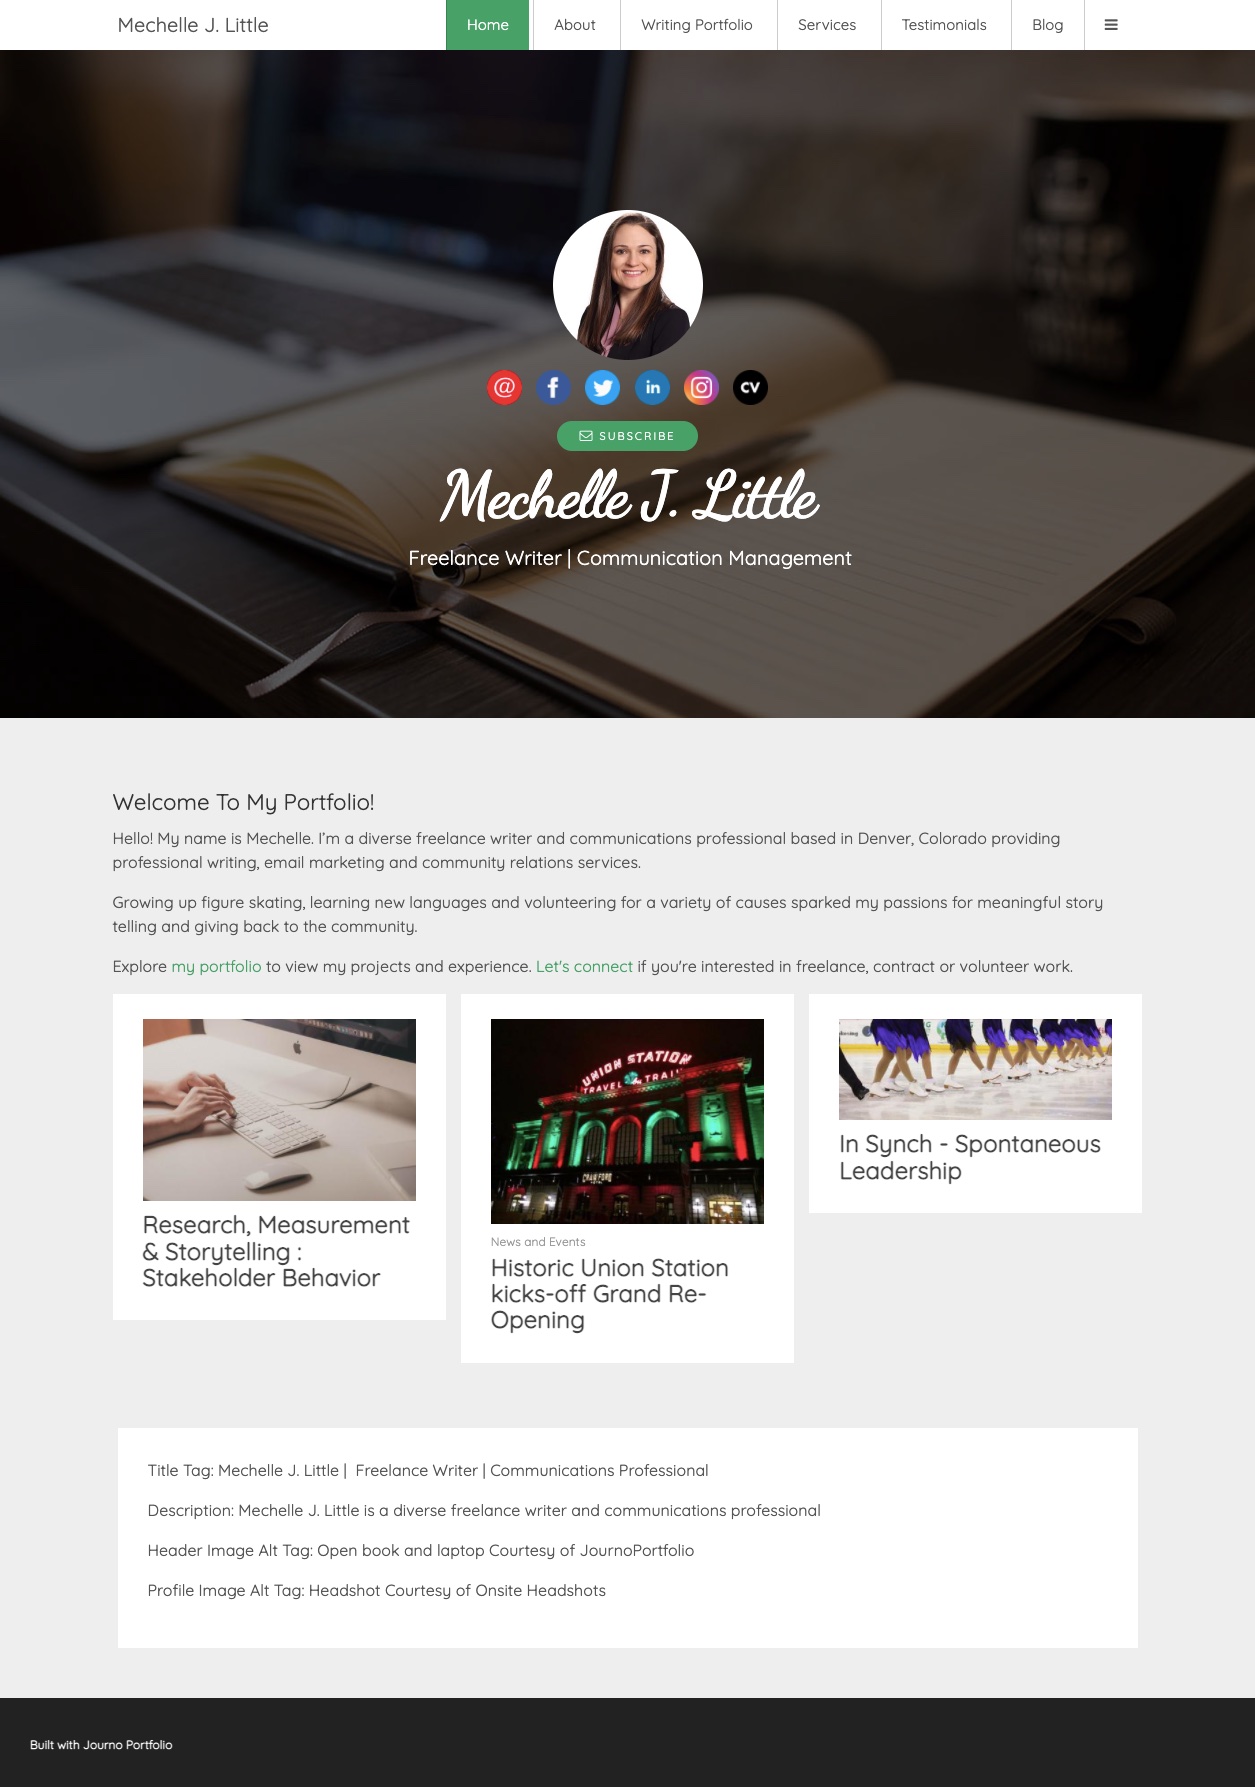 Mechelle Little's Portfolio Home Page